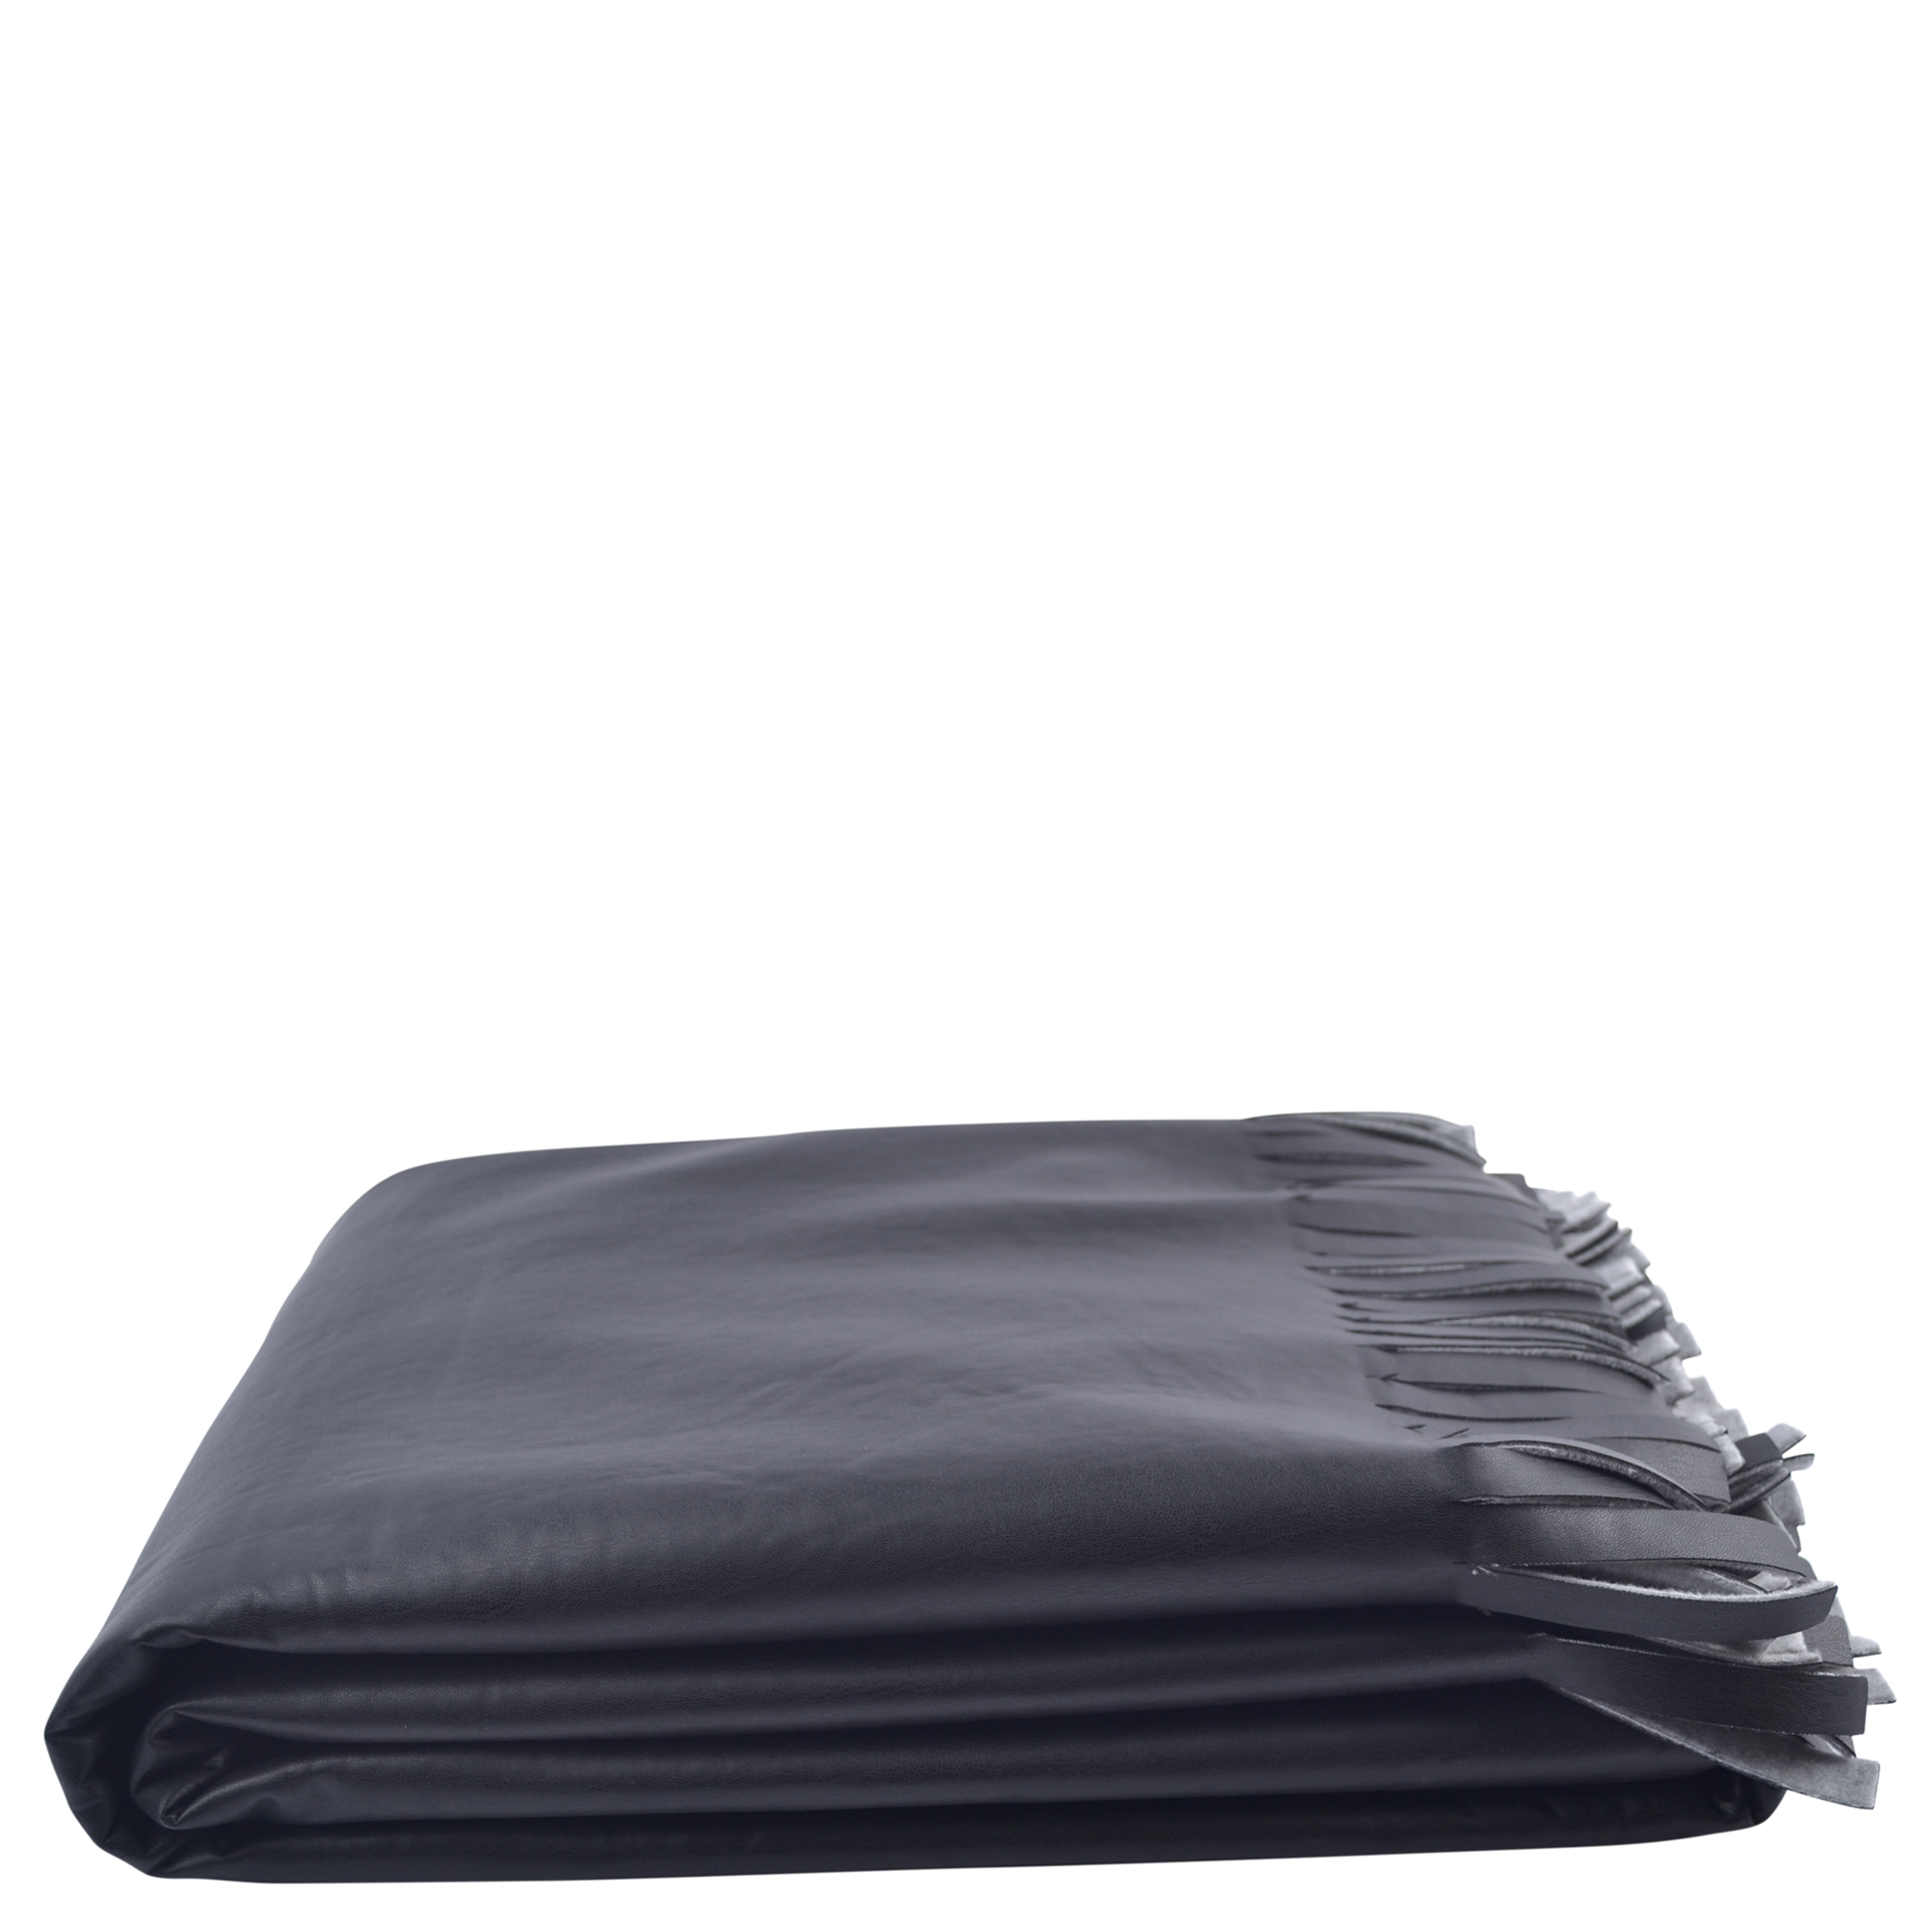 Decke aus Polyester, Polyurethan und Viskose, schwarz in 135x190cm, zoeppritz Soft-Vegan Fringe